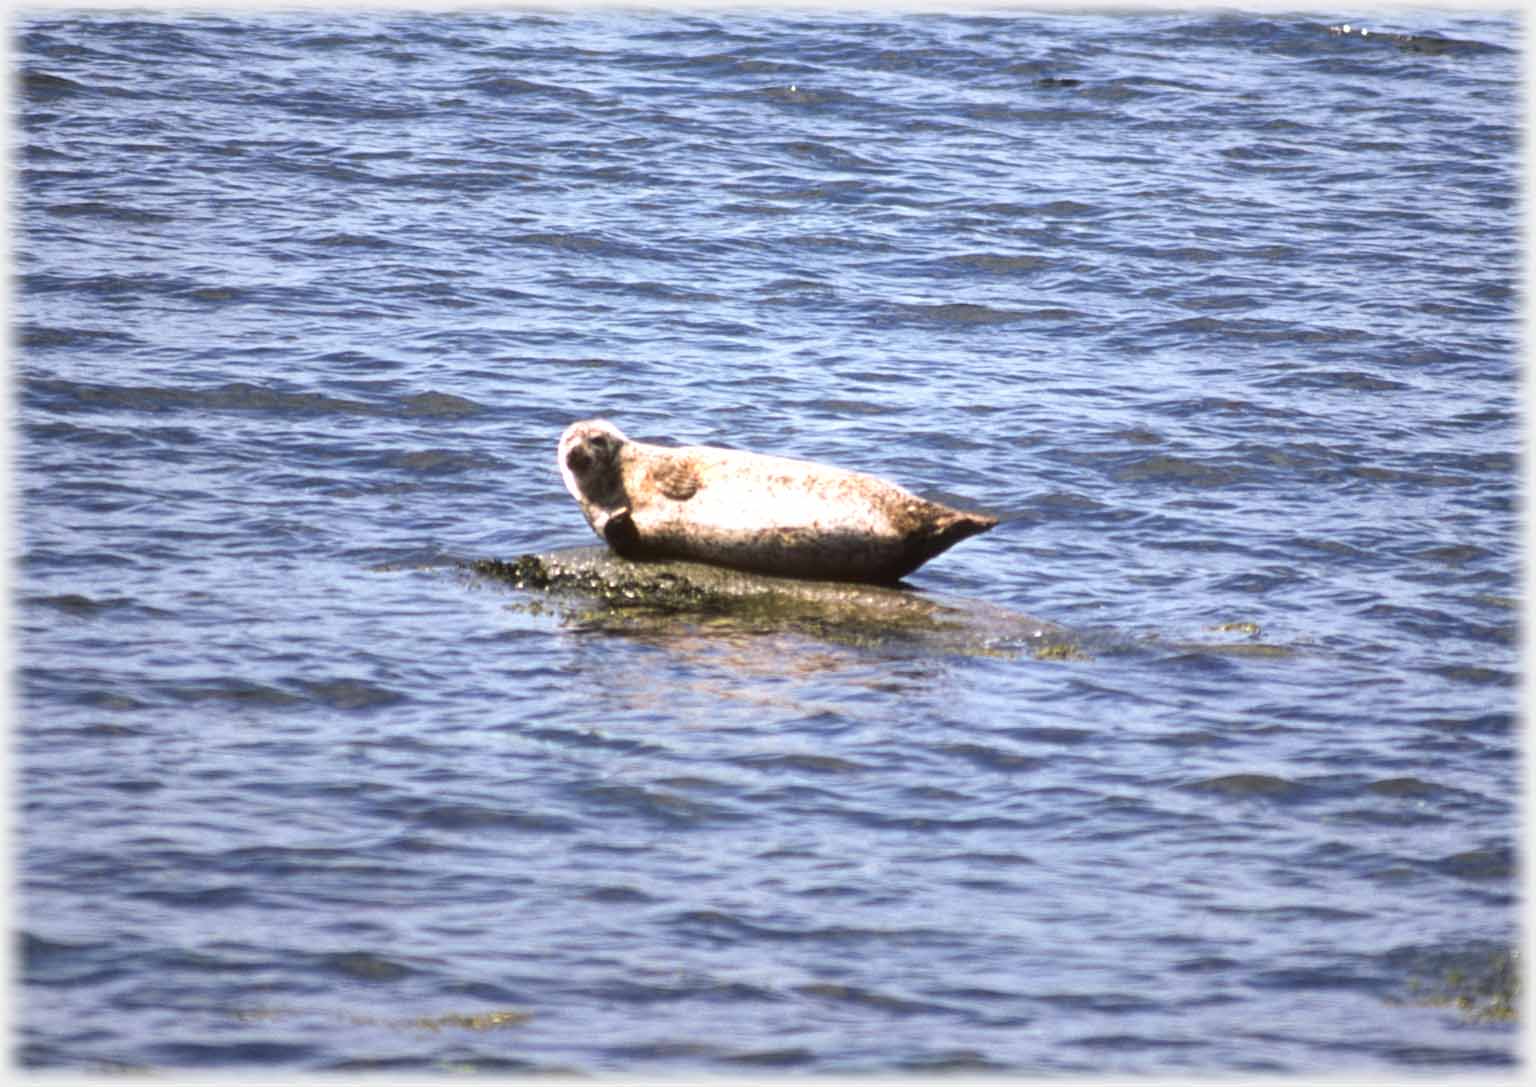 Seal basking on rock.